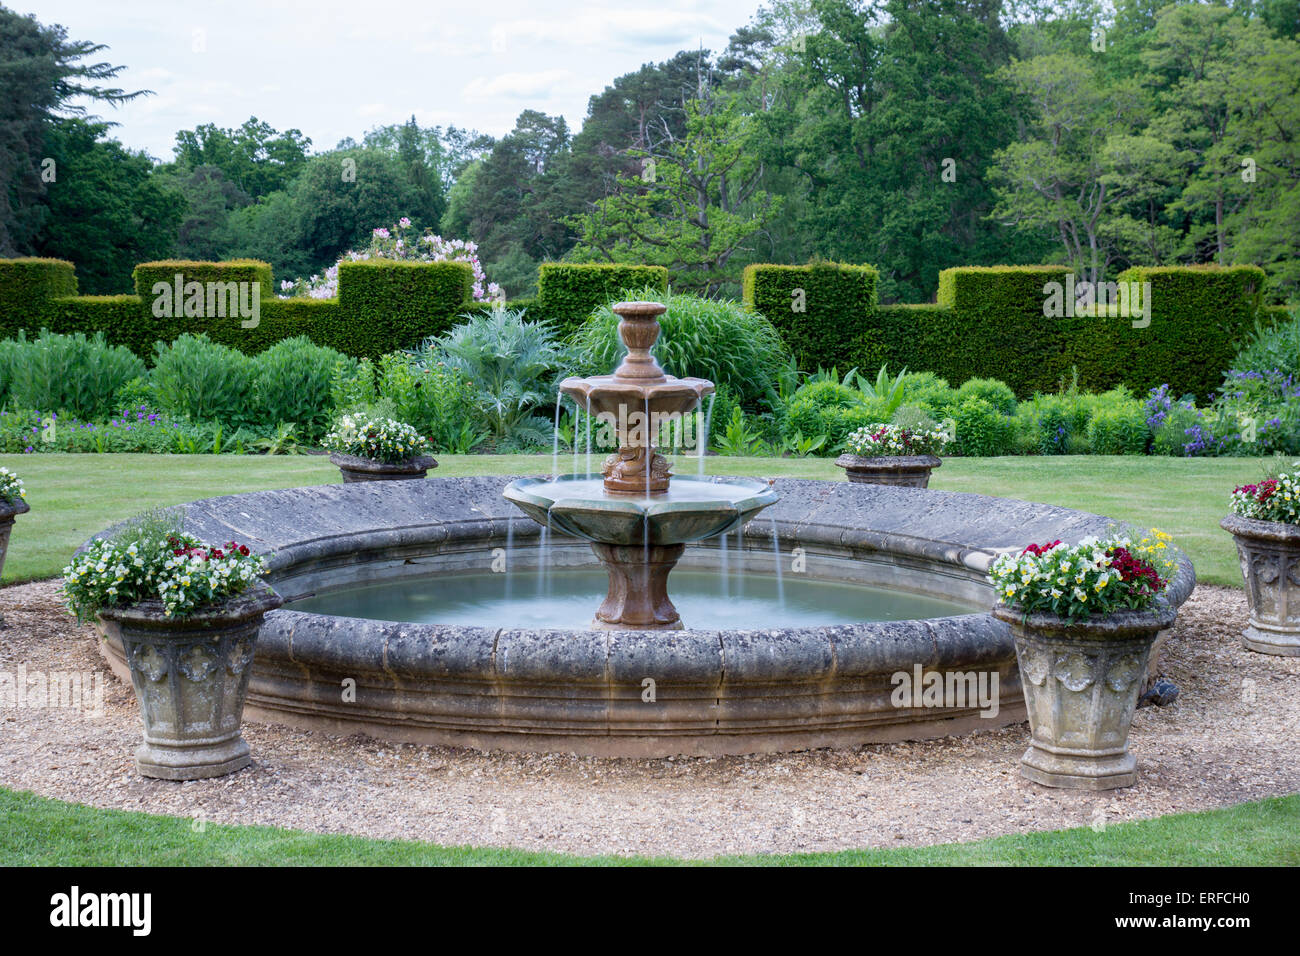 Fountain in an English garden Stock Photo